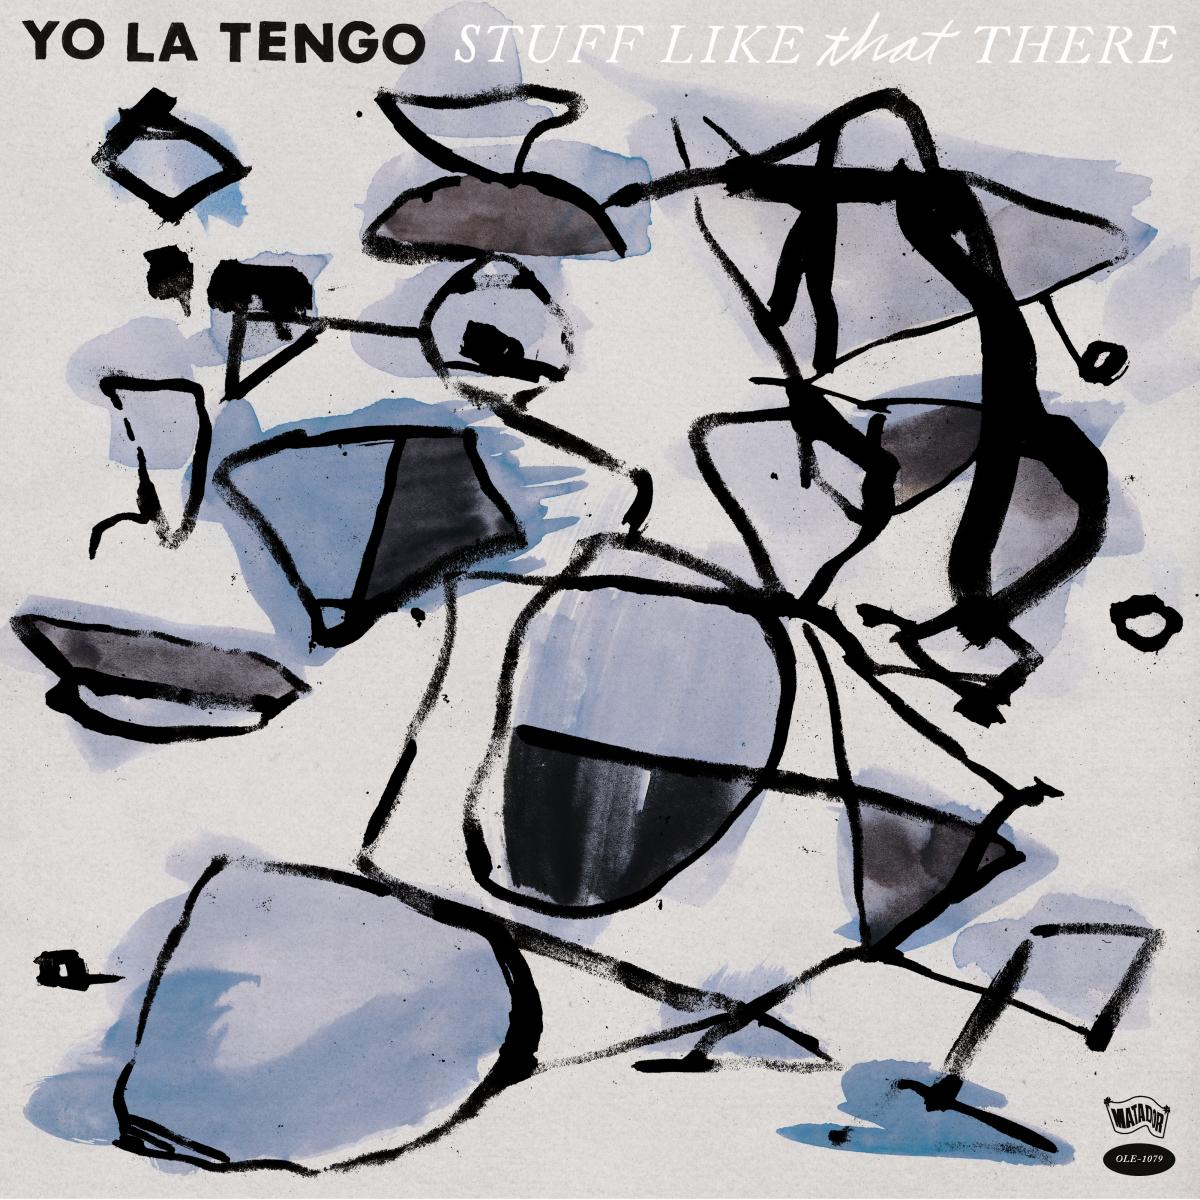 Yo La Tengo - Stuff Like That There - 744861107910 - LP's - Yellow Racket Records